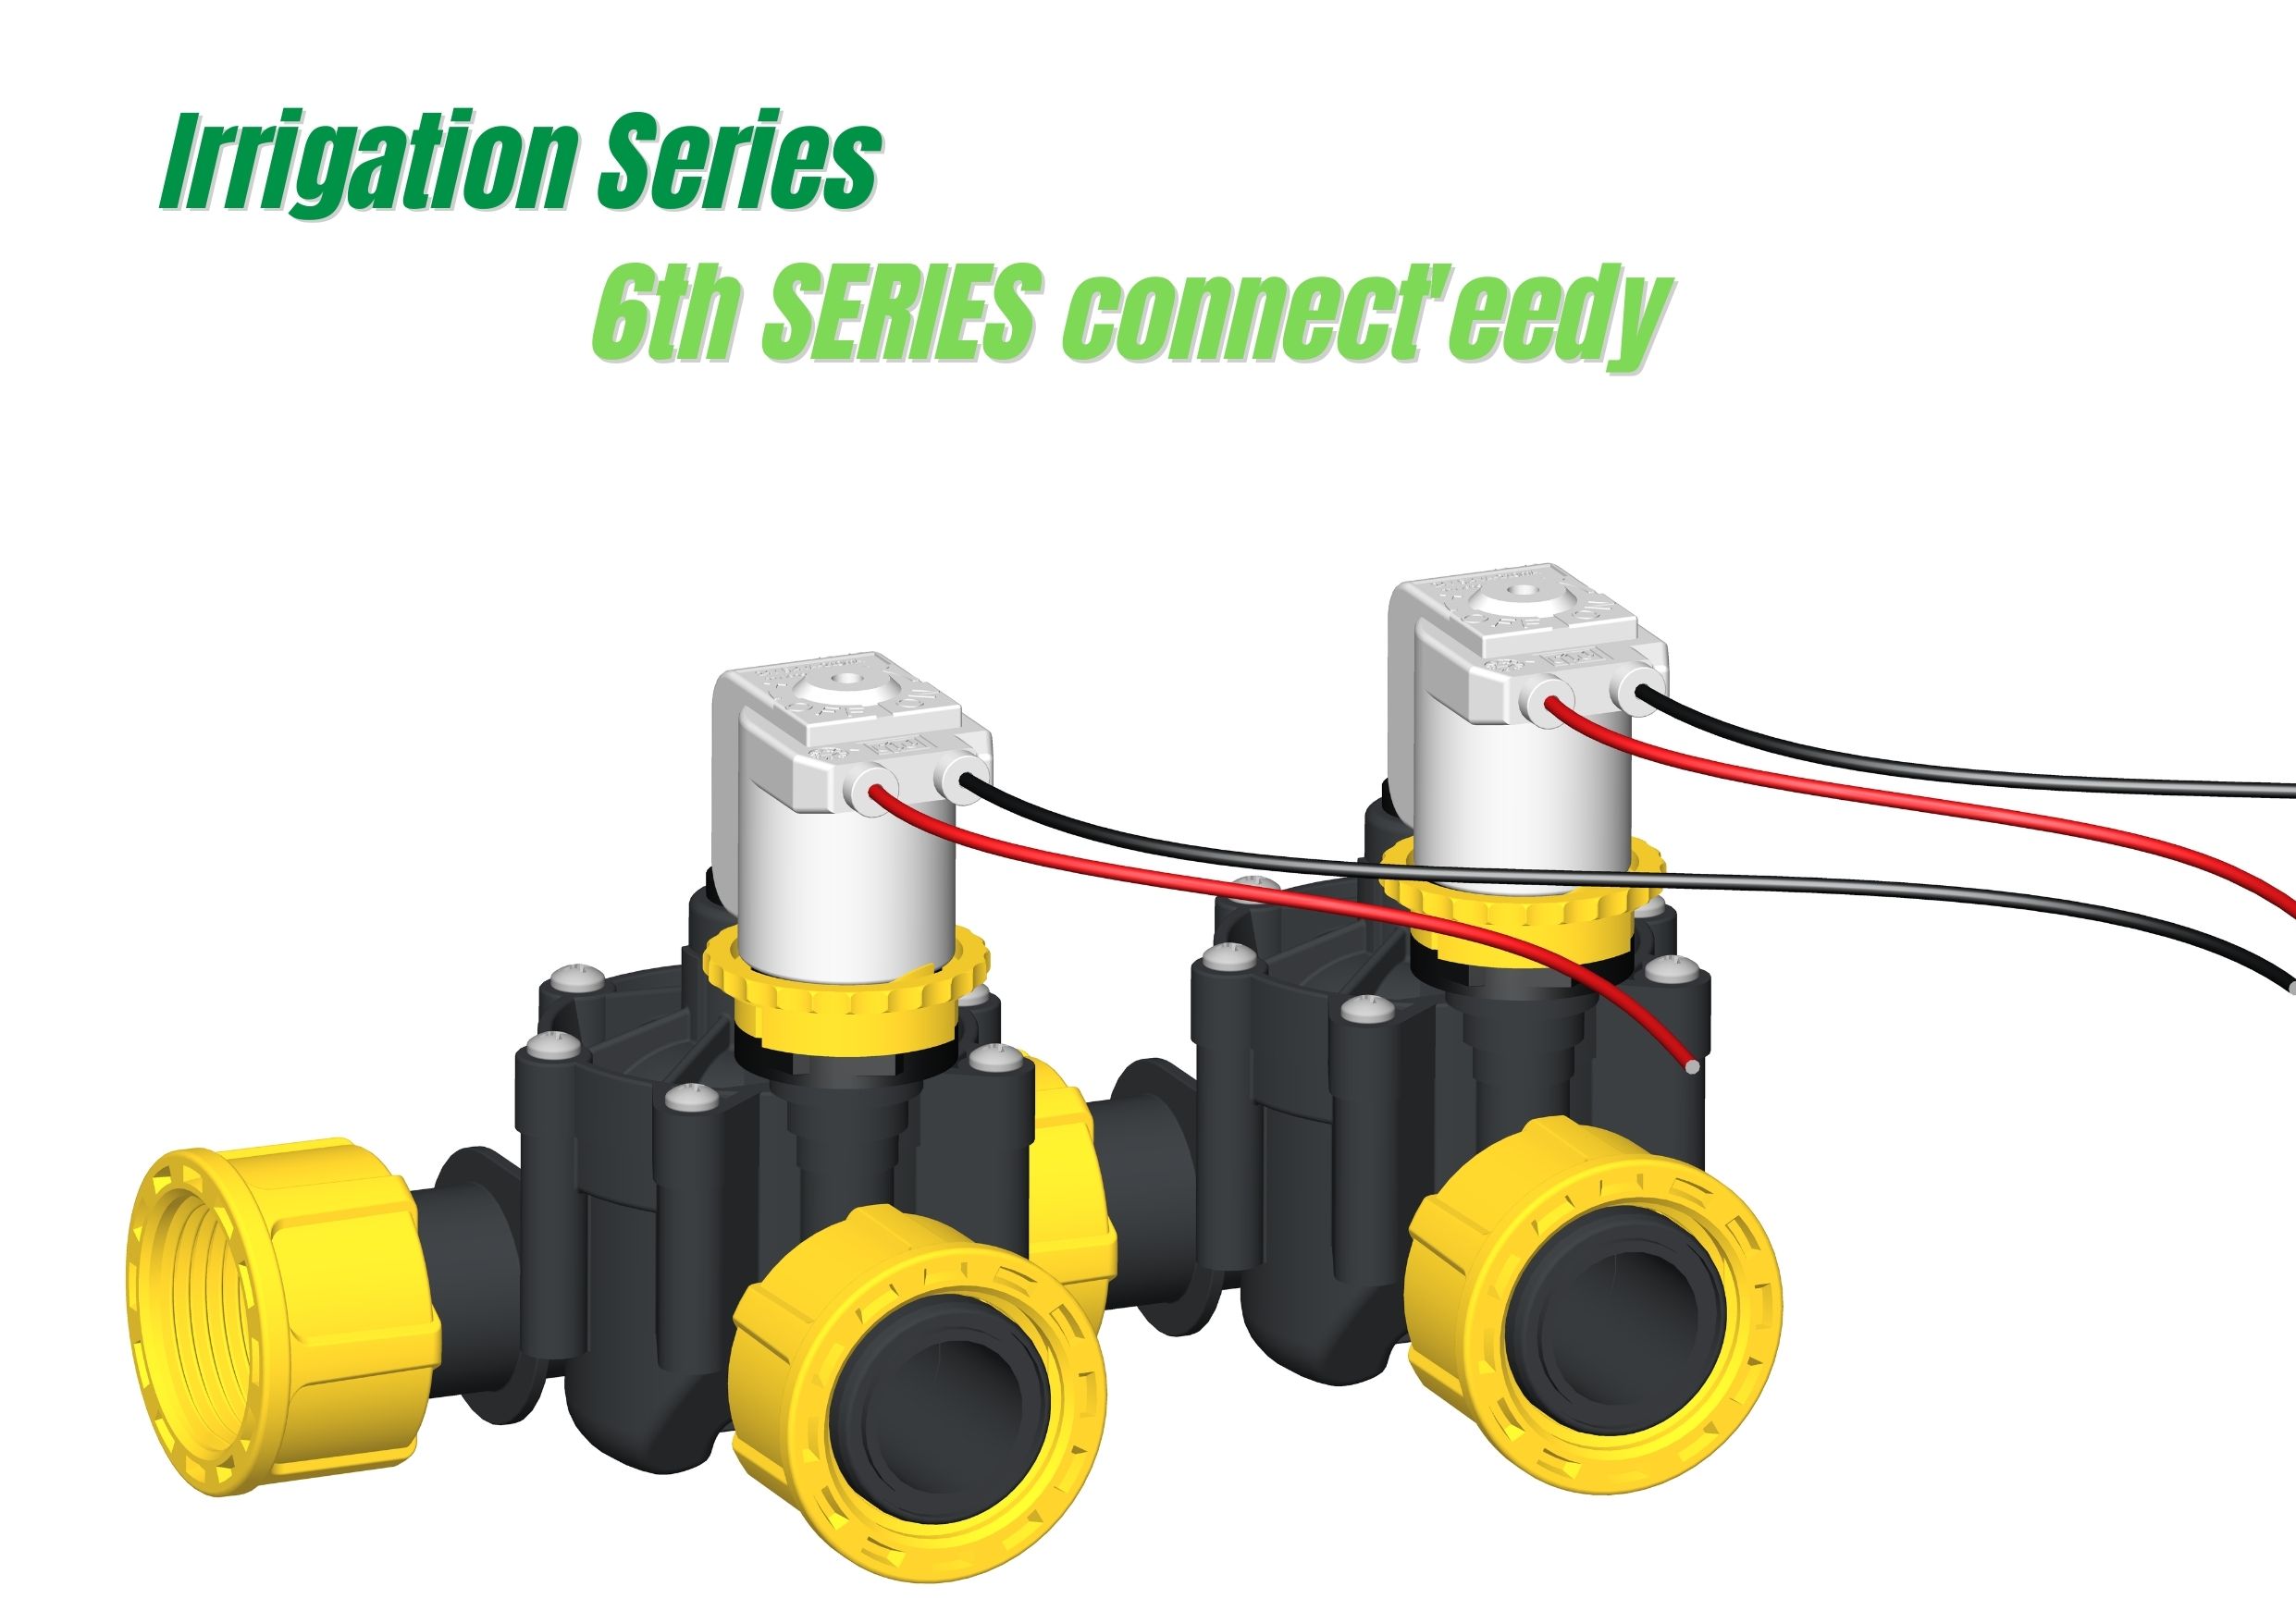 RPE presenta la 6ª Serie Connect'eedy - la nueva electroválvula para el riego